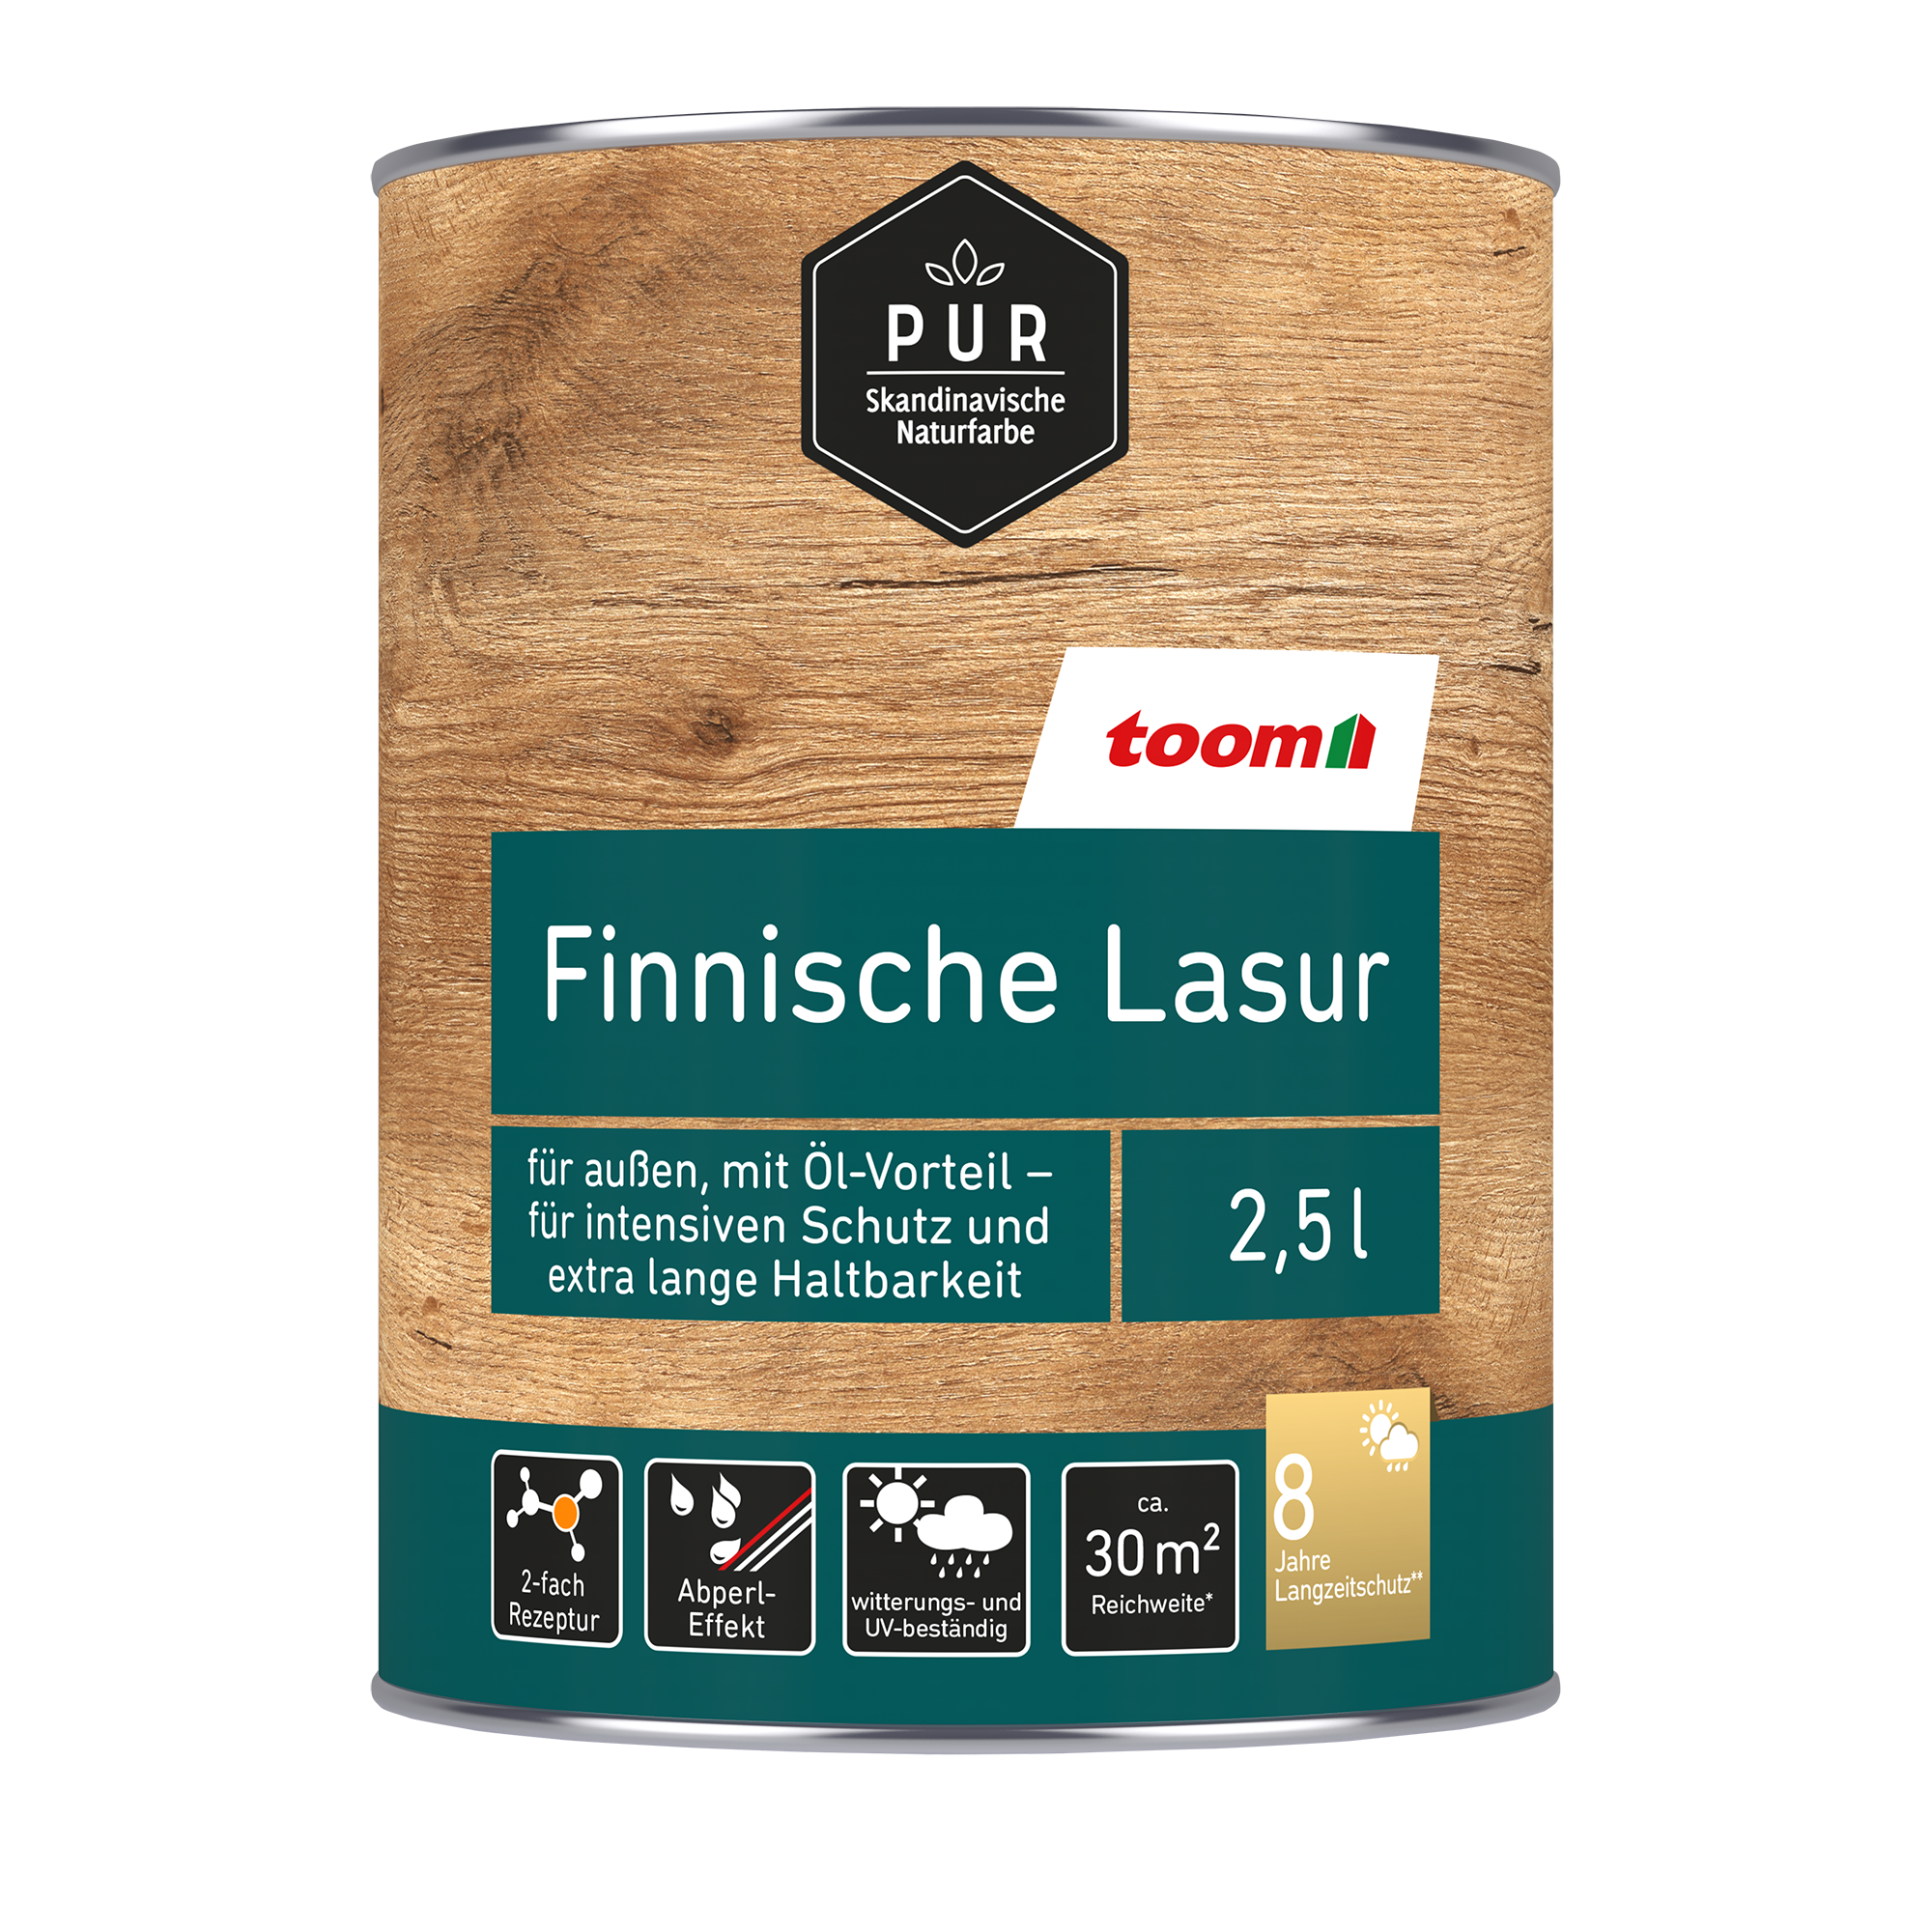 Finnische Lasur palisanderfarben 2,5 l + product picture